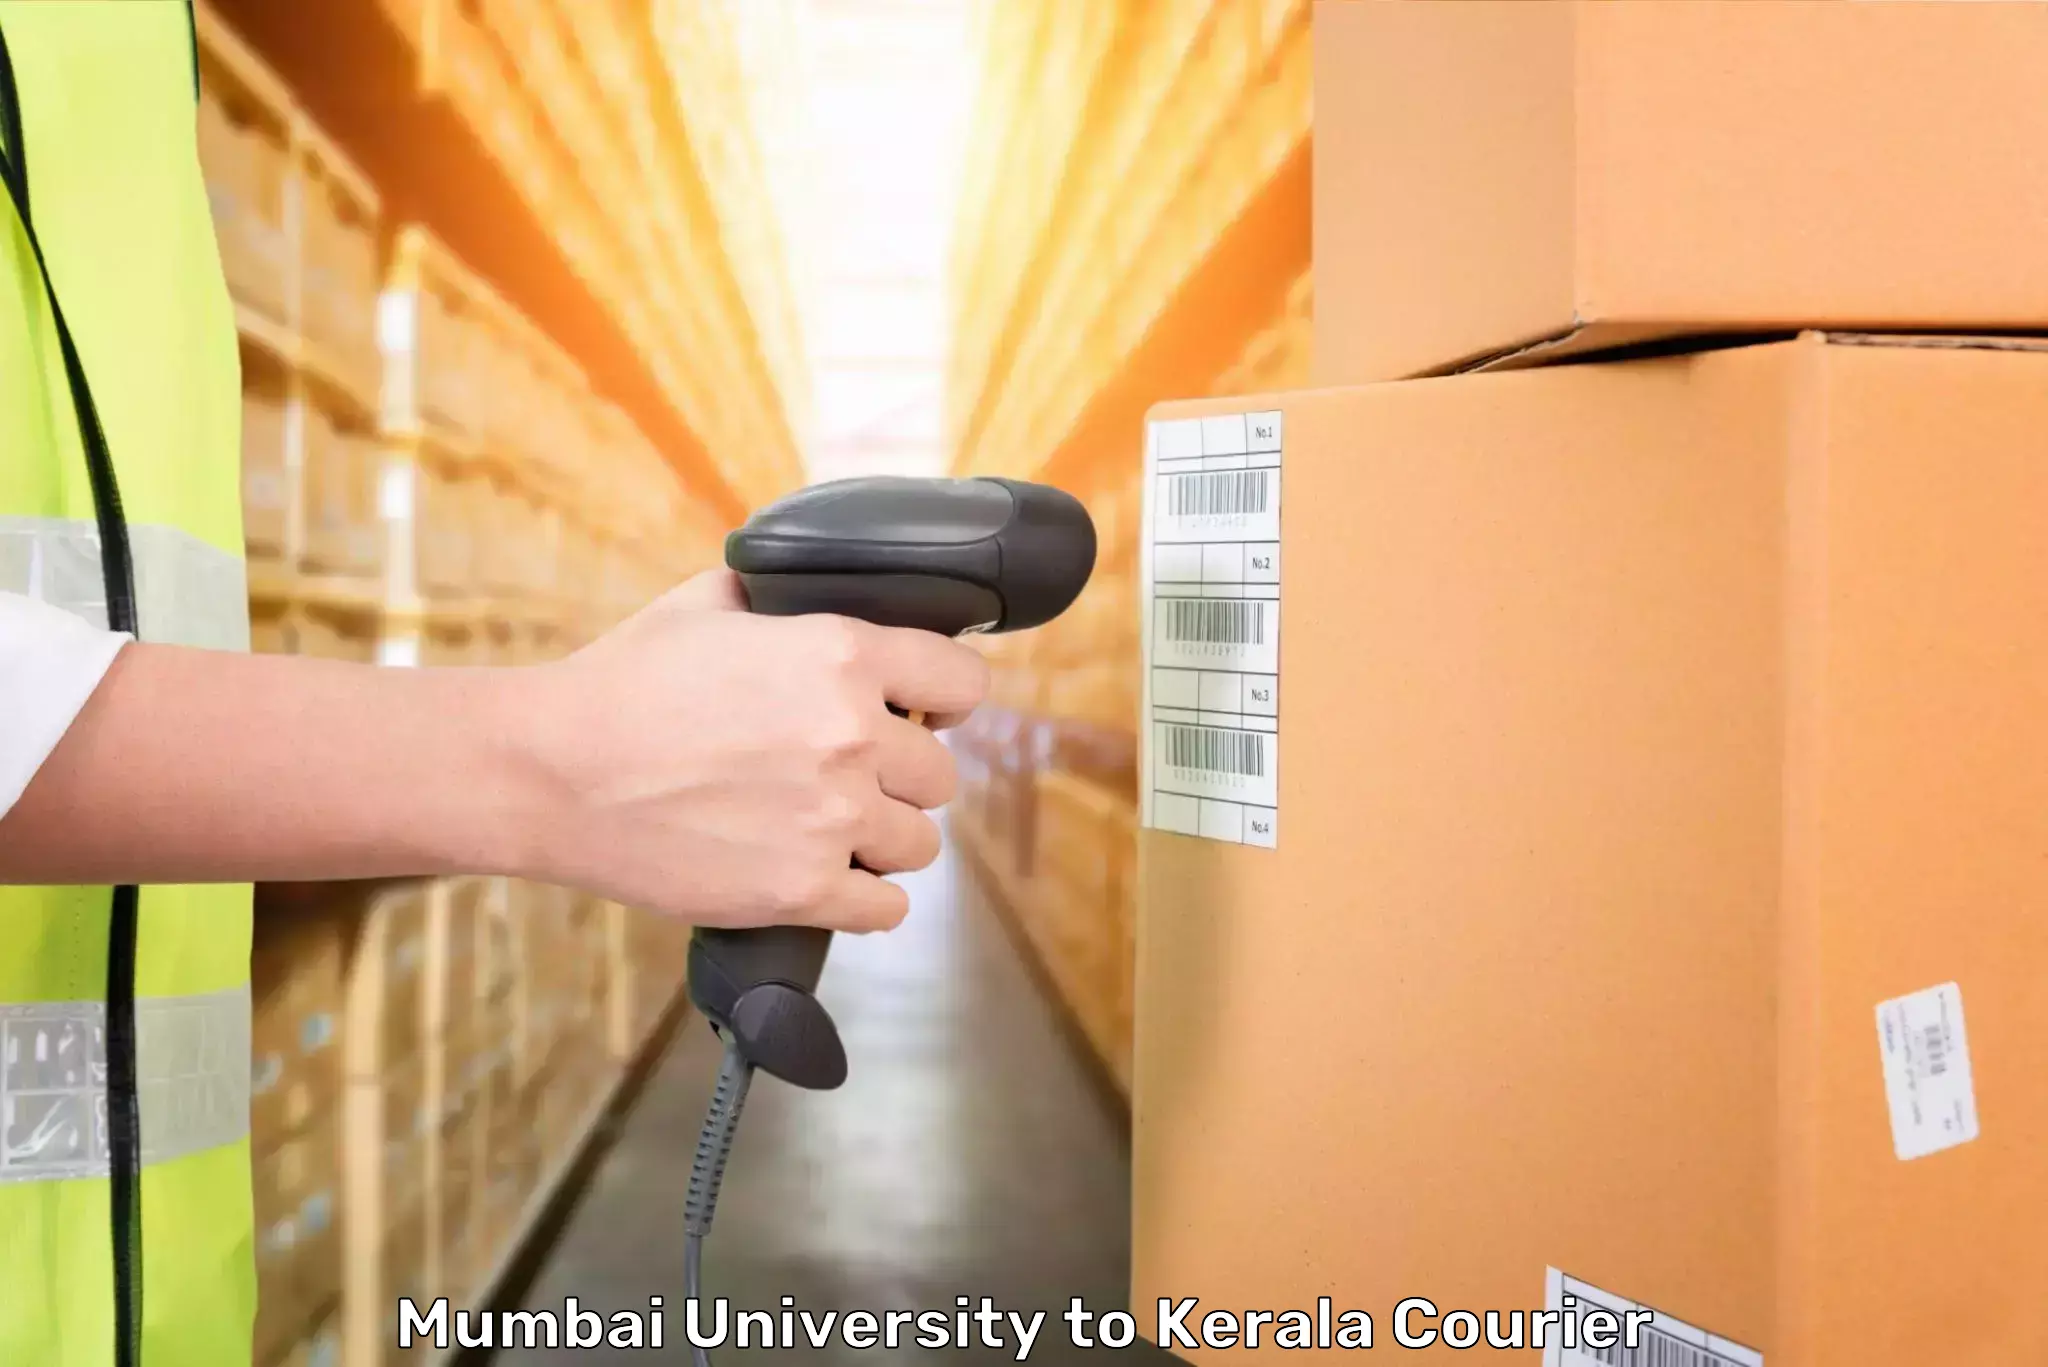 Luggage shipment specialists Mumbai University to Vaikom